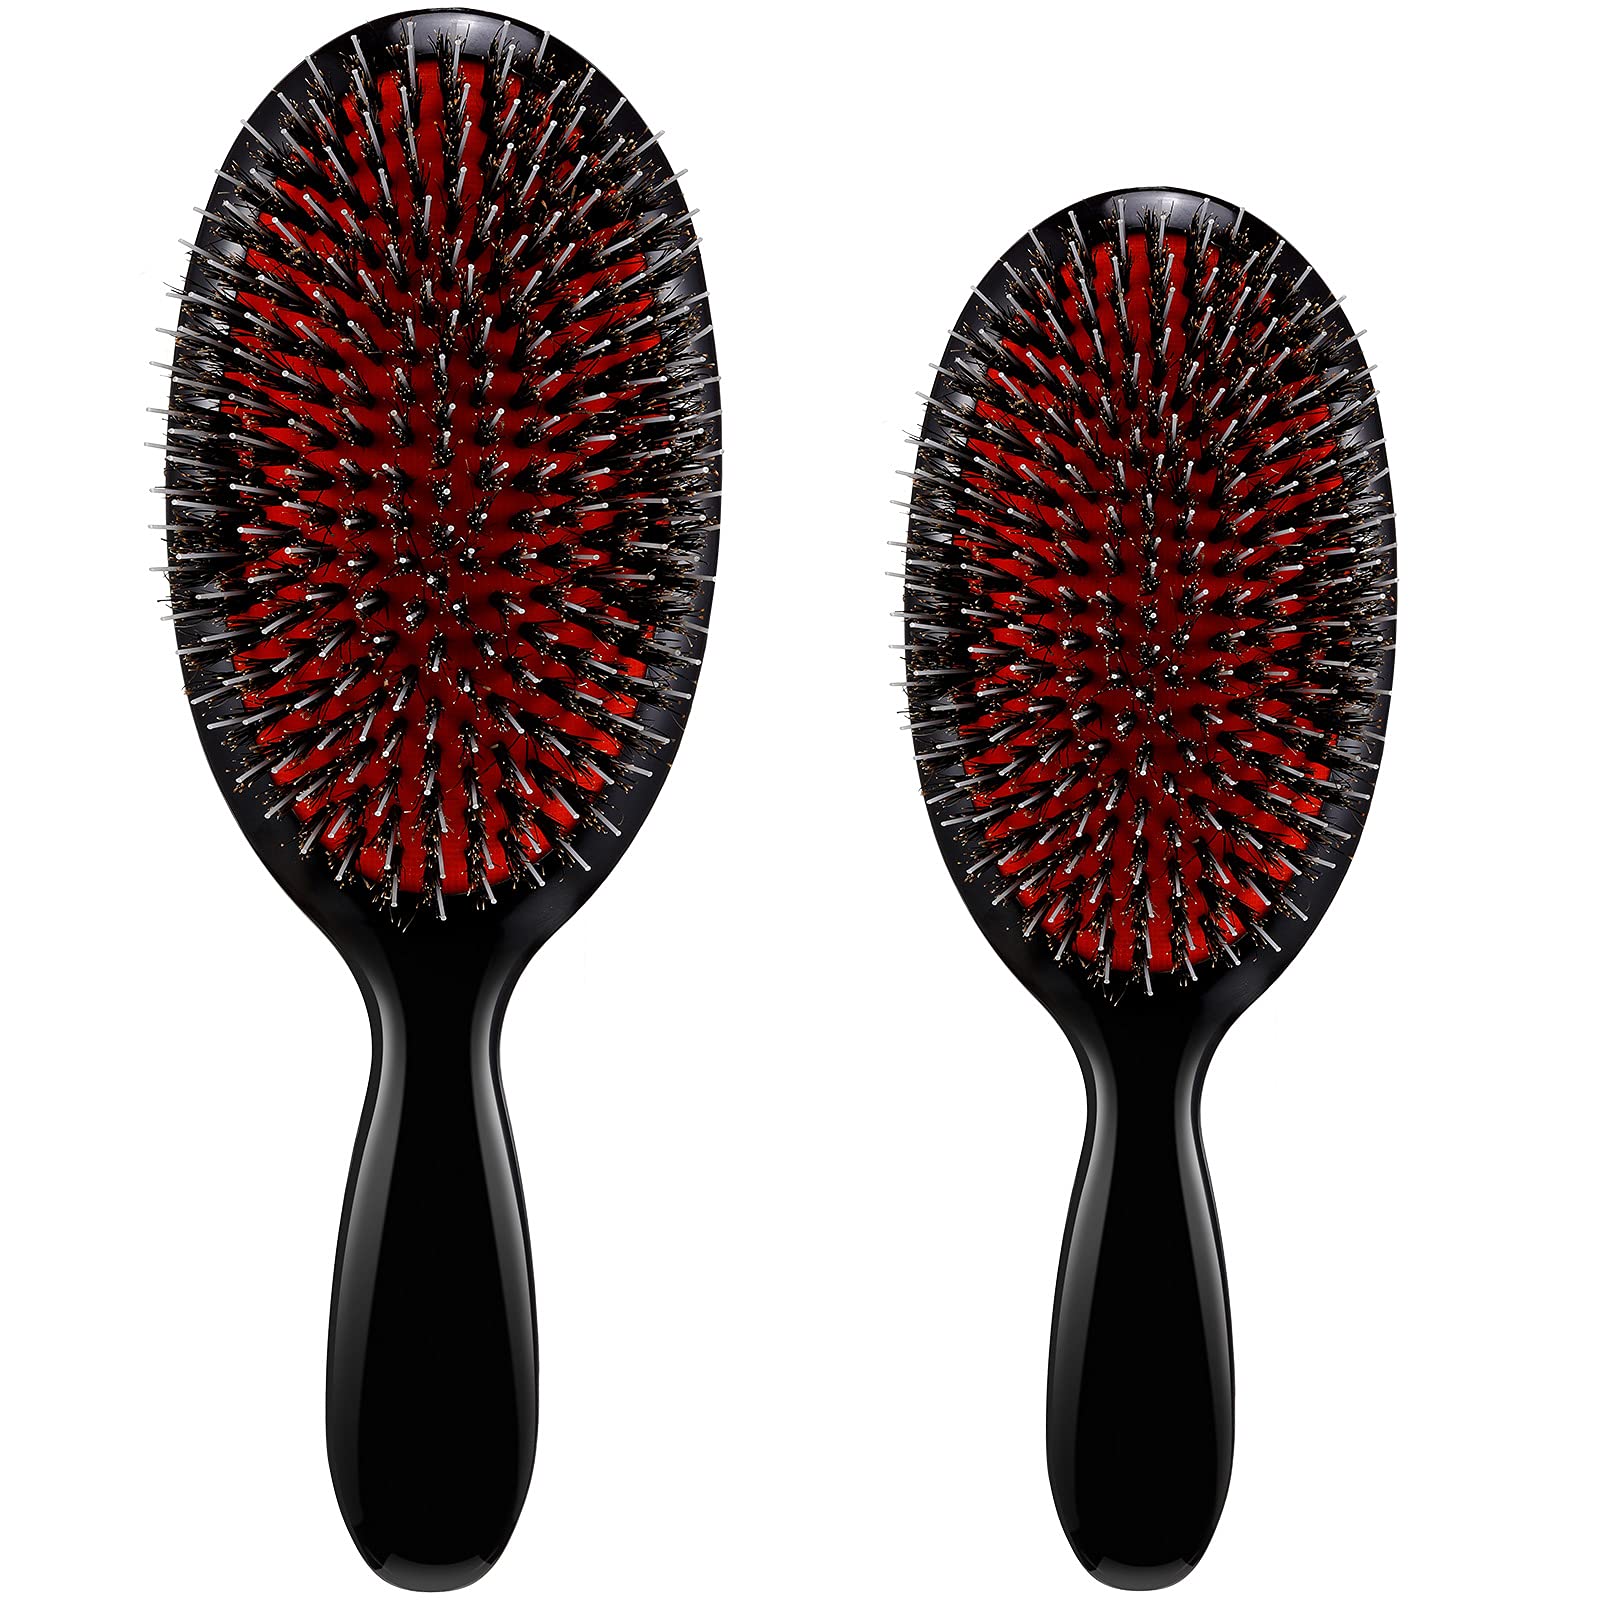 Hair Brush, Boar Bristle Hair Brushes for Women men Kid,Boar&Nylon Bristle  Brush